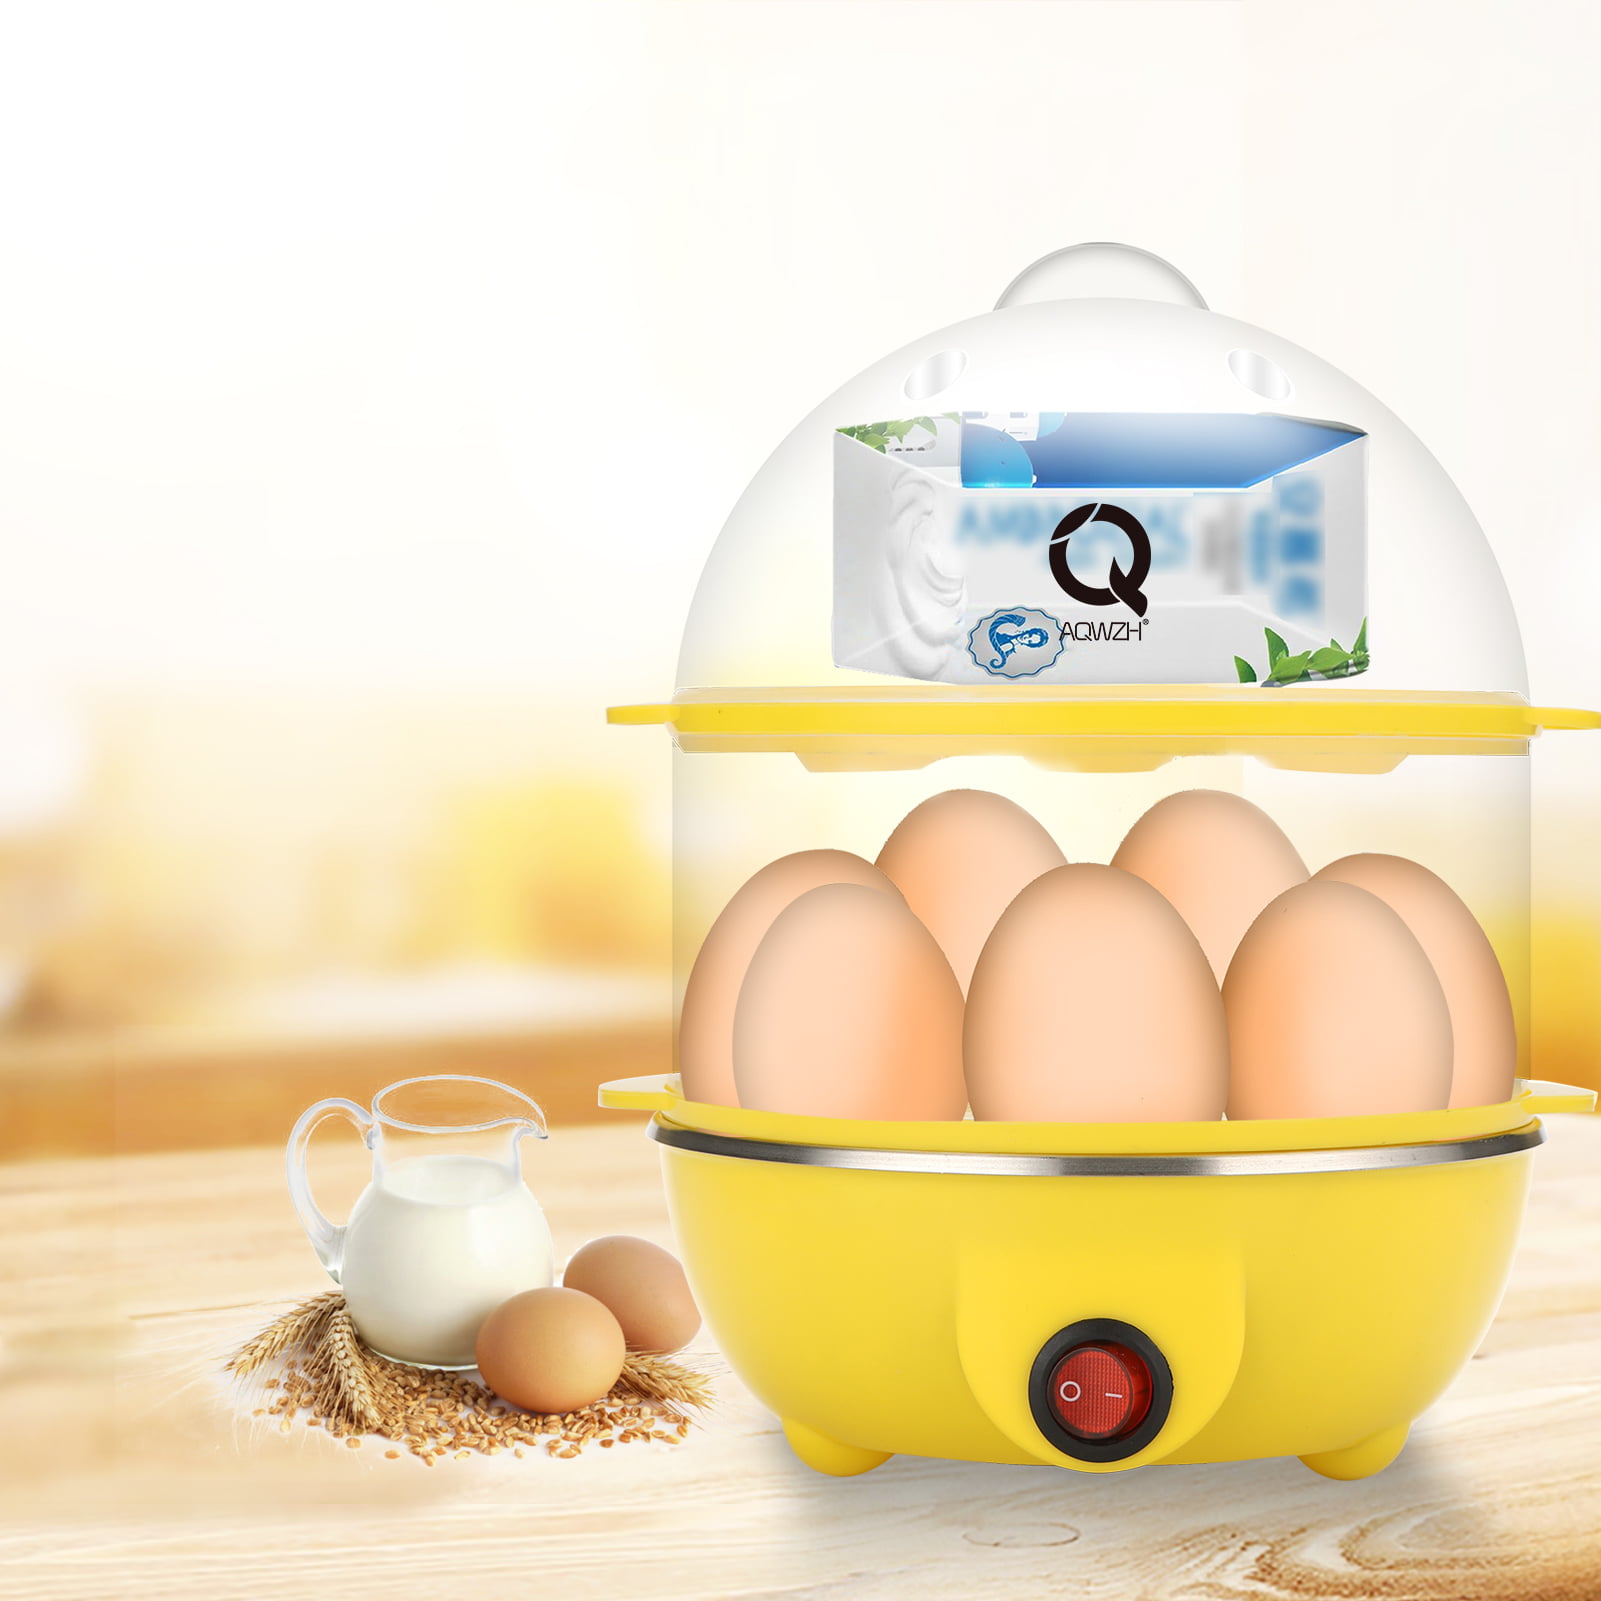 Egg Poacher Microwave 2-Cavity Hard Boiled Egg Maker Egg Steamer Save Time  For Corn Cake Fried Eggs Sandwich Boiled Eggs - AliExpress